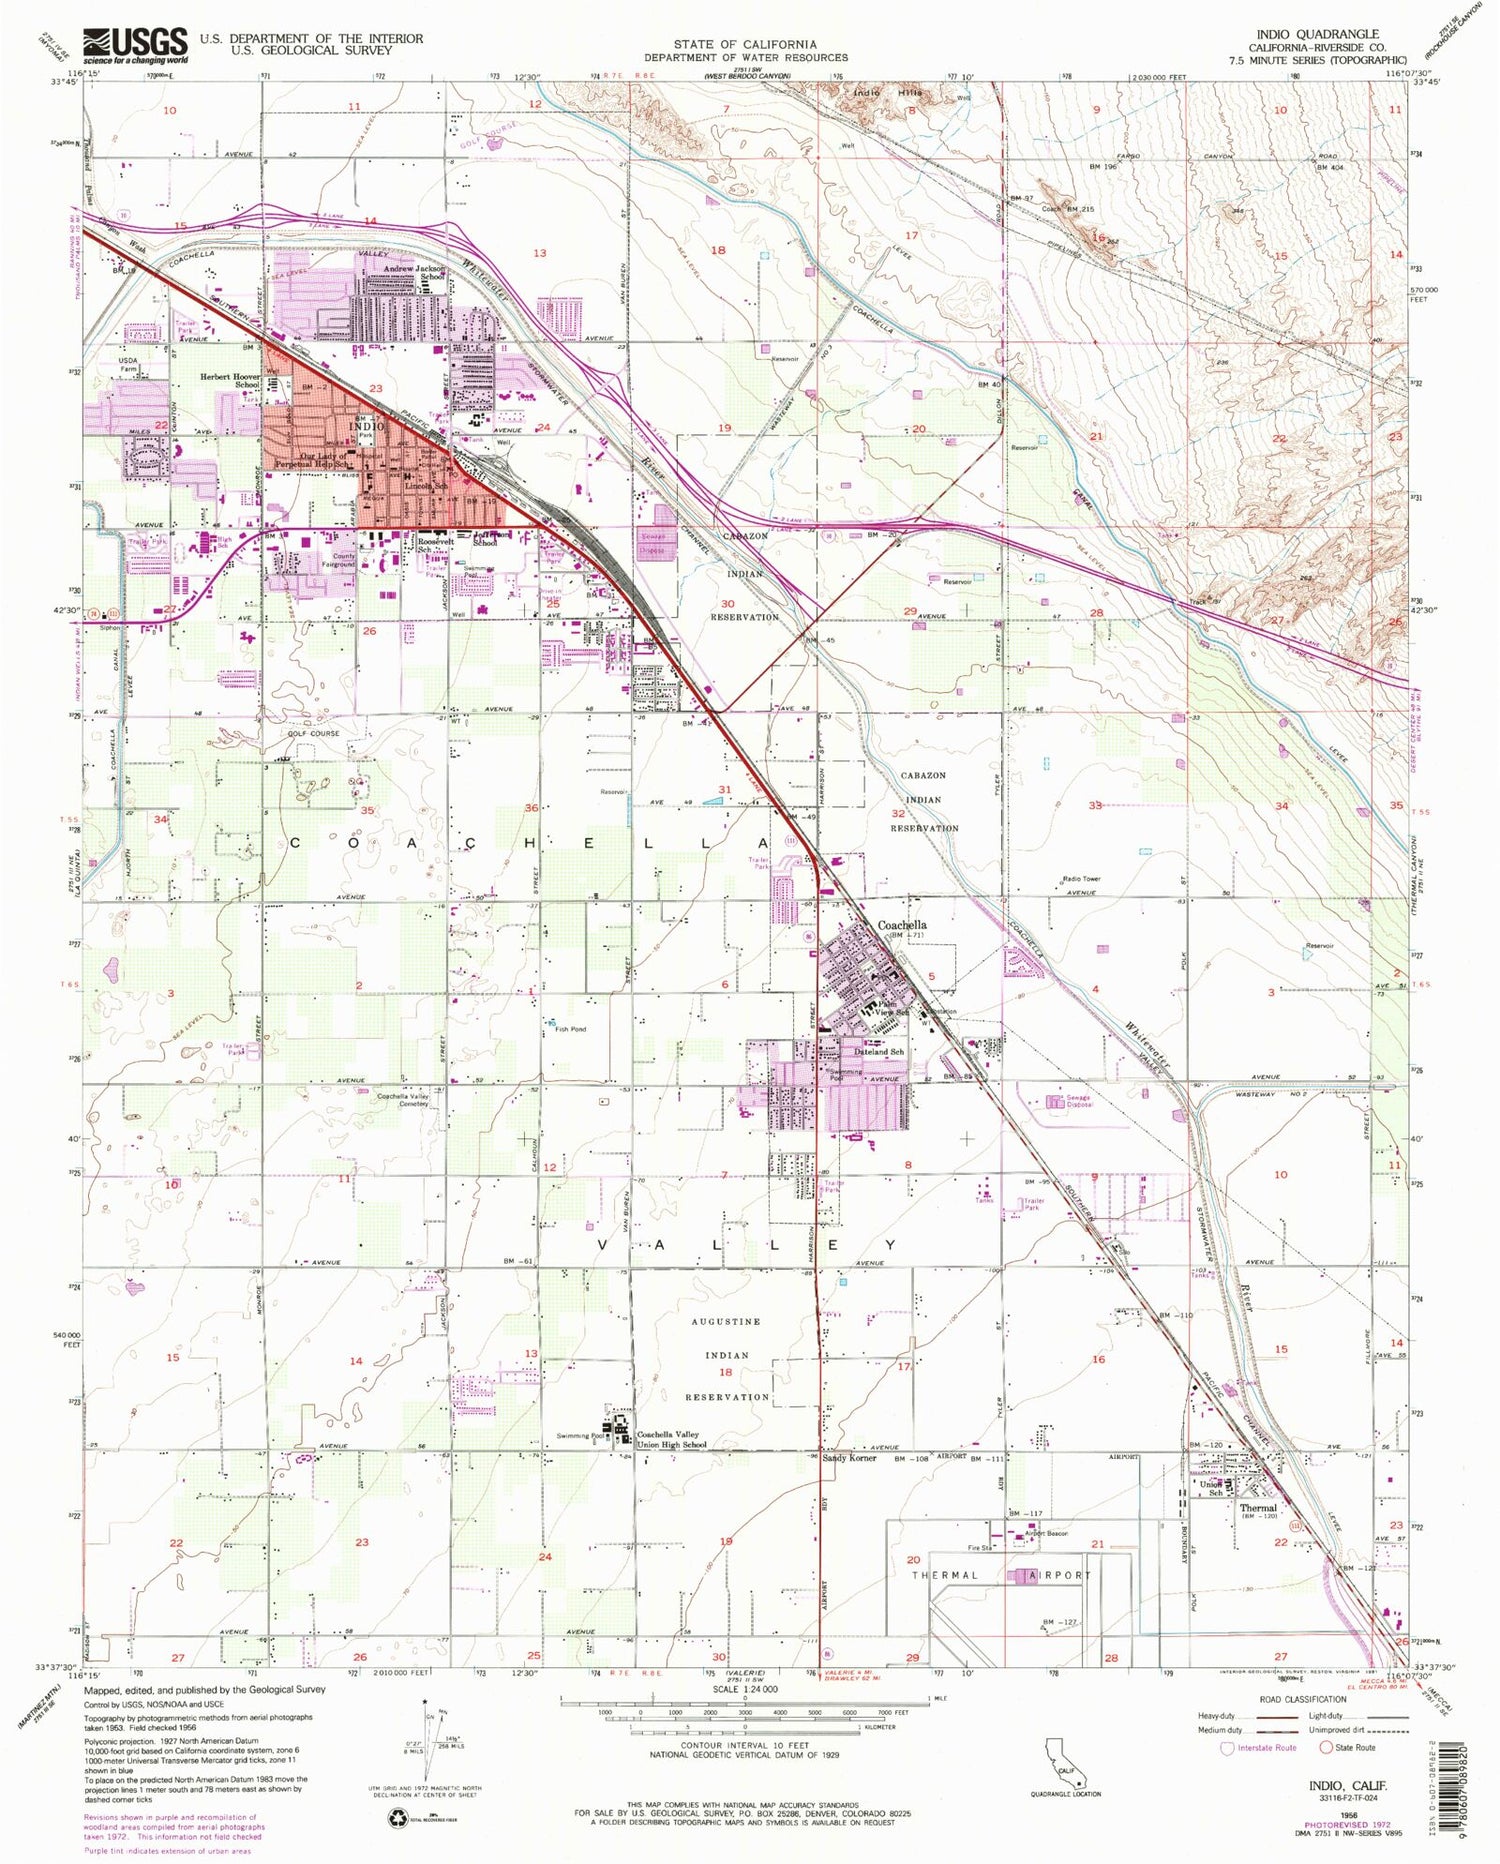 Classic USGS Indio California 7.5'x7.5' Topo Map Image